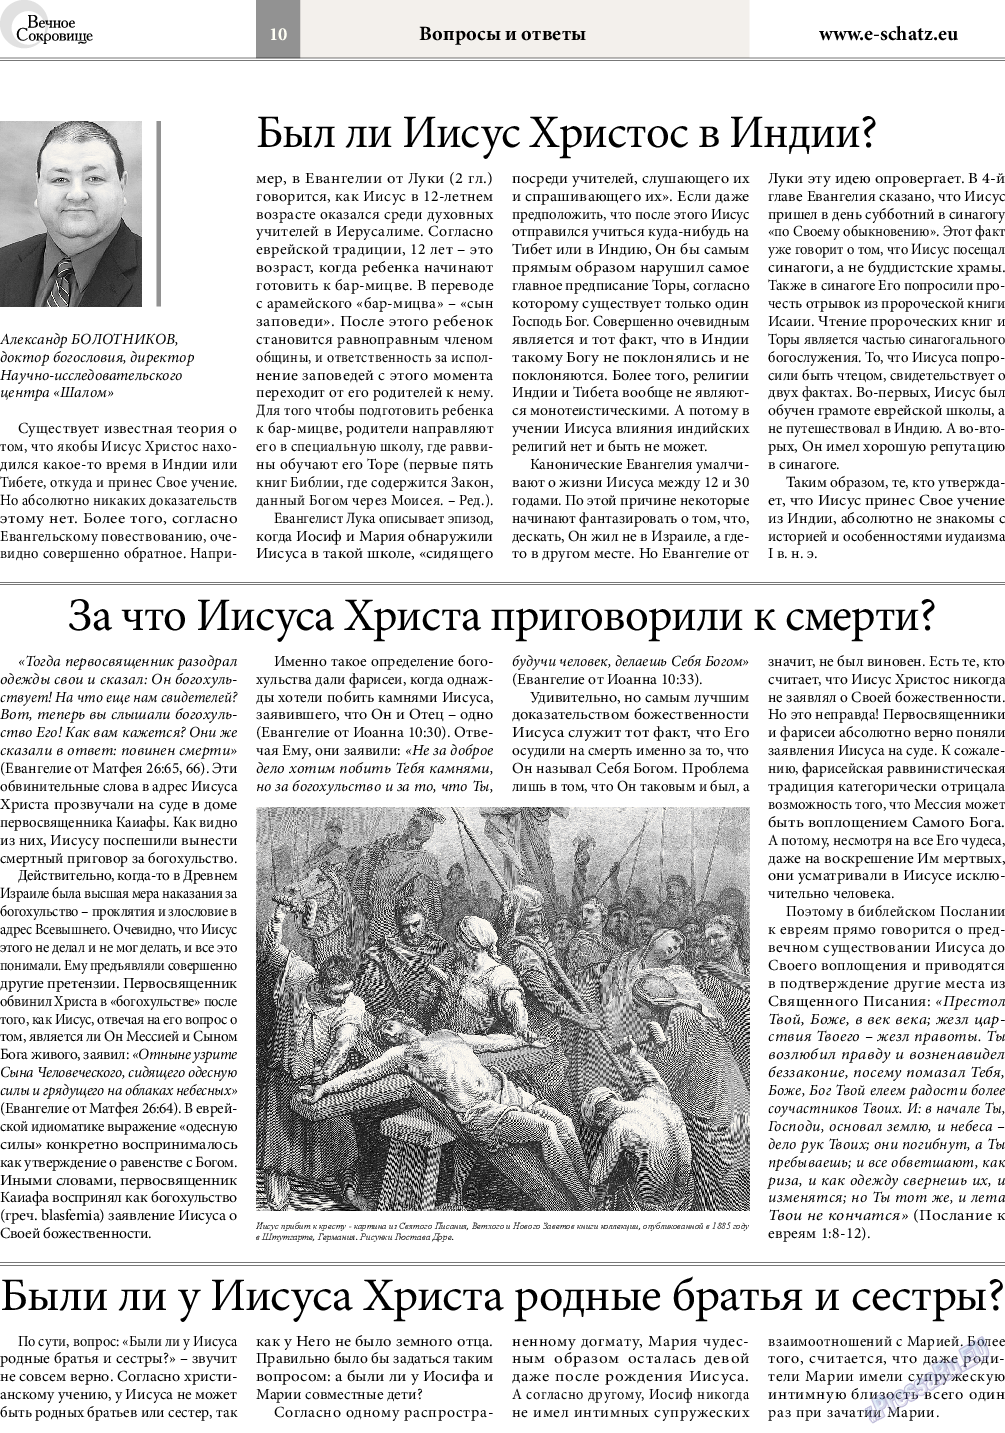 Вечное сокровище, газета. 2016 №1 стр.10